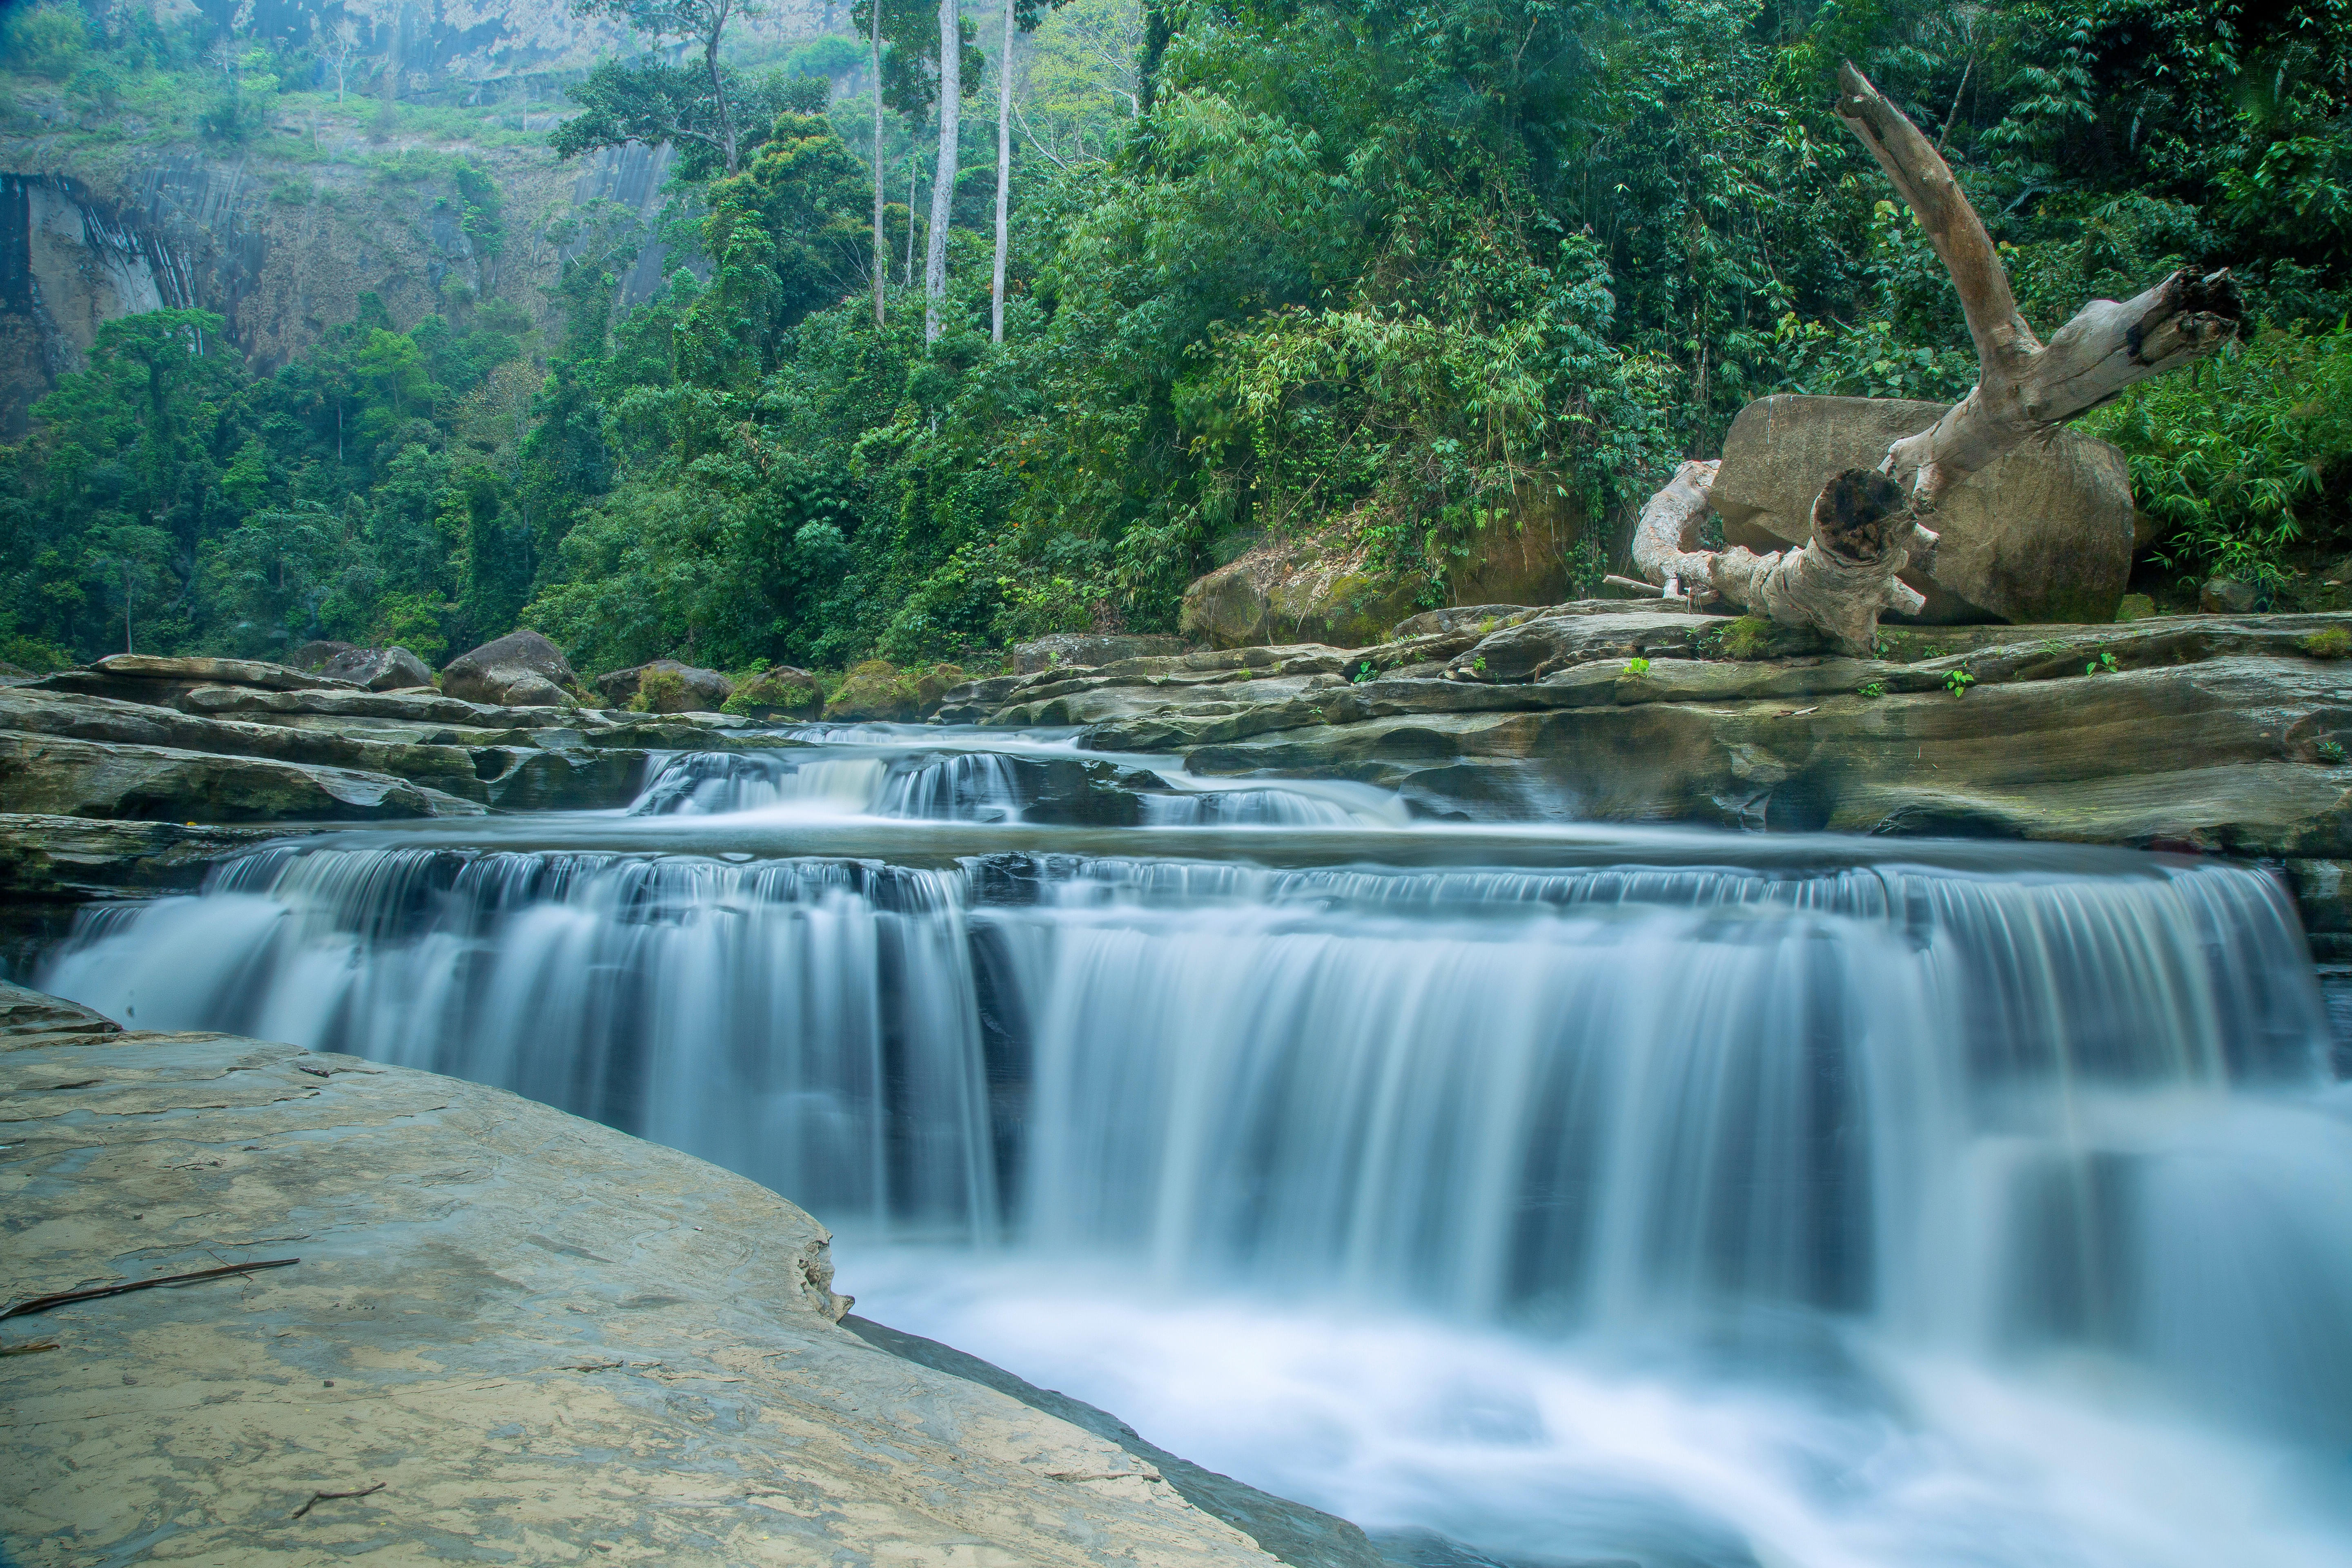 Amiakhum Waterfall